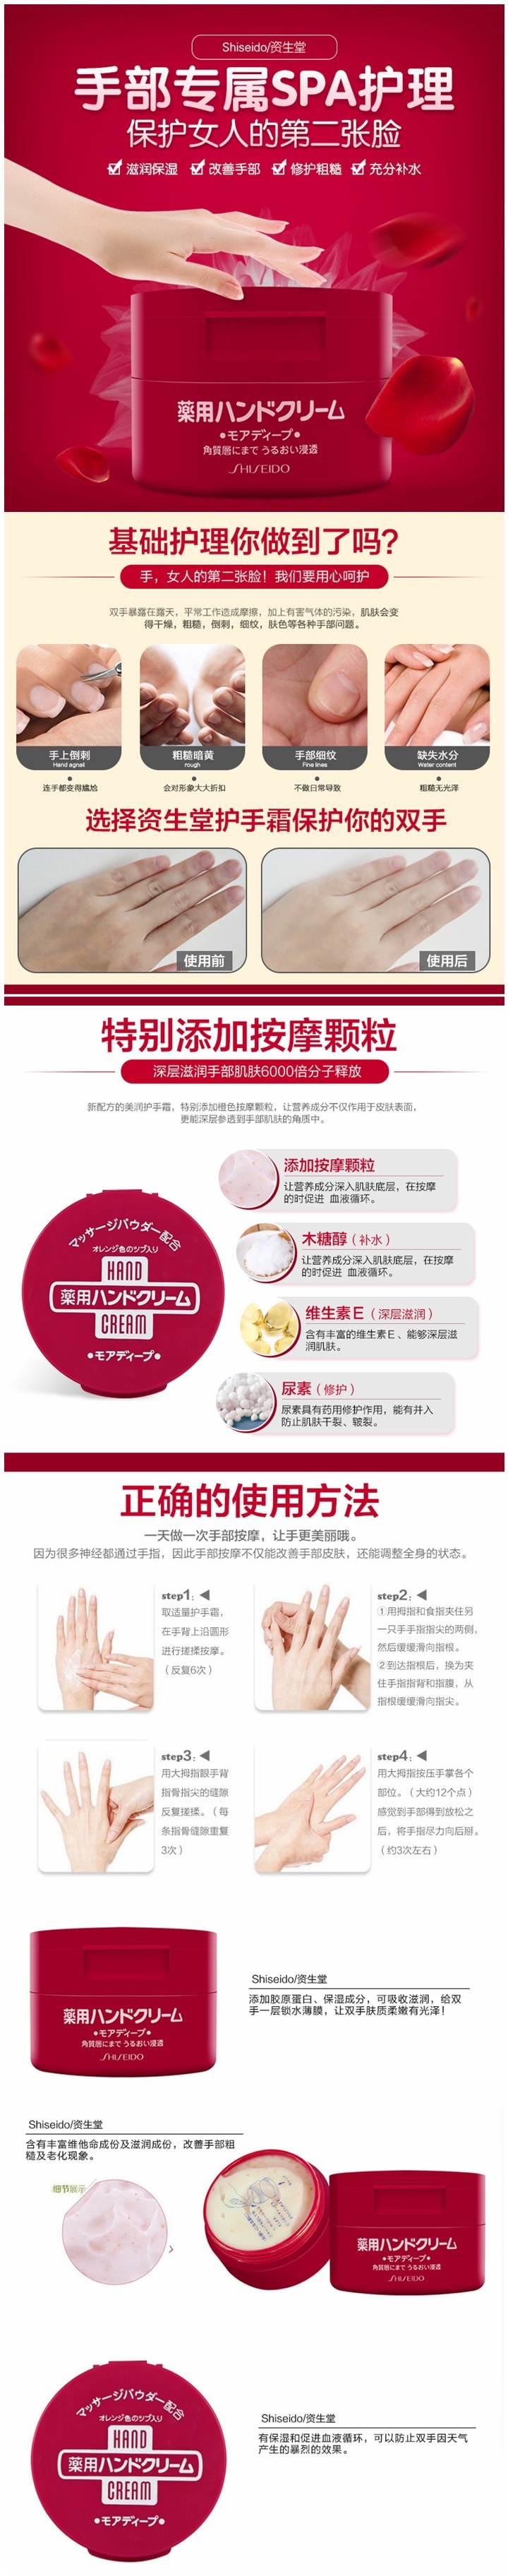 【日本直郵】 SHISEIDO 資生堂 藥用尿素水潤護手霜 100g